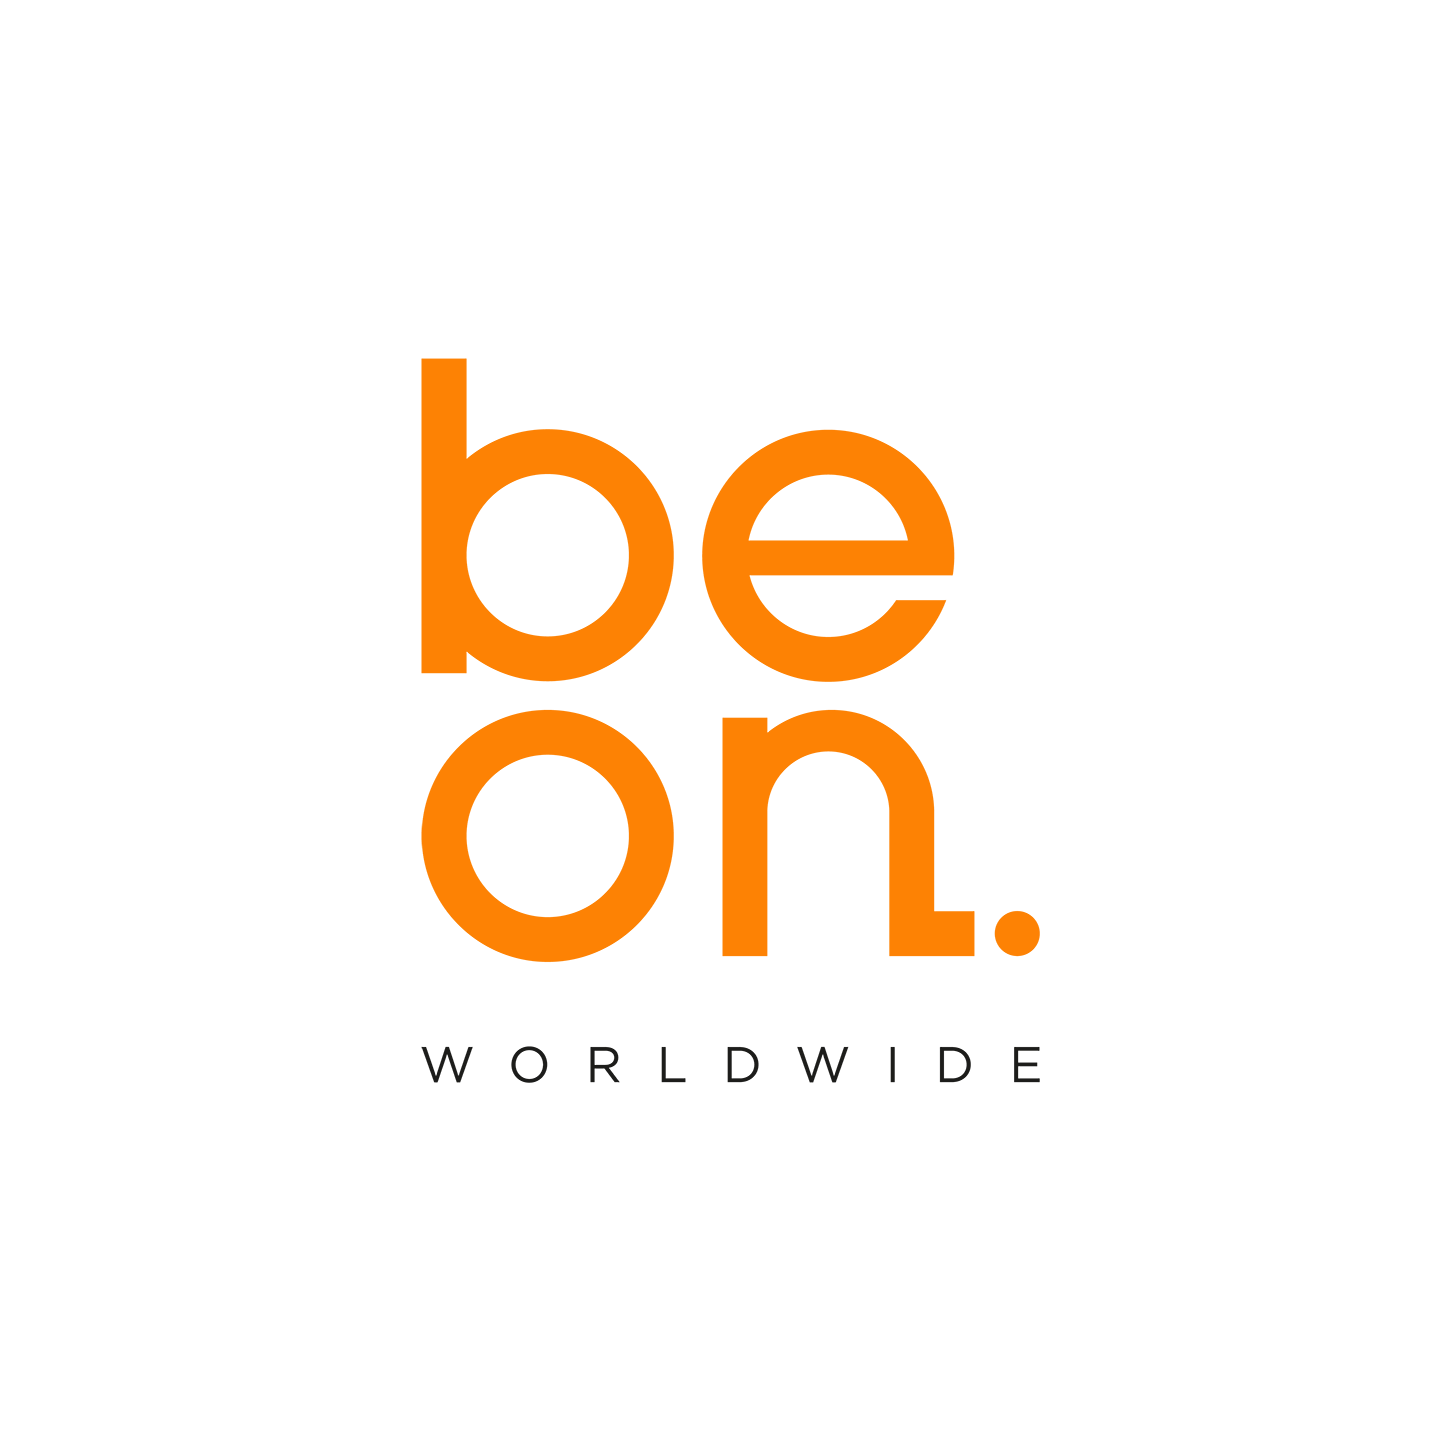 Beon. Worldwide